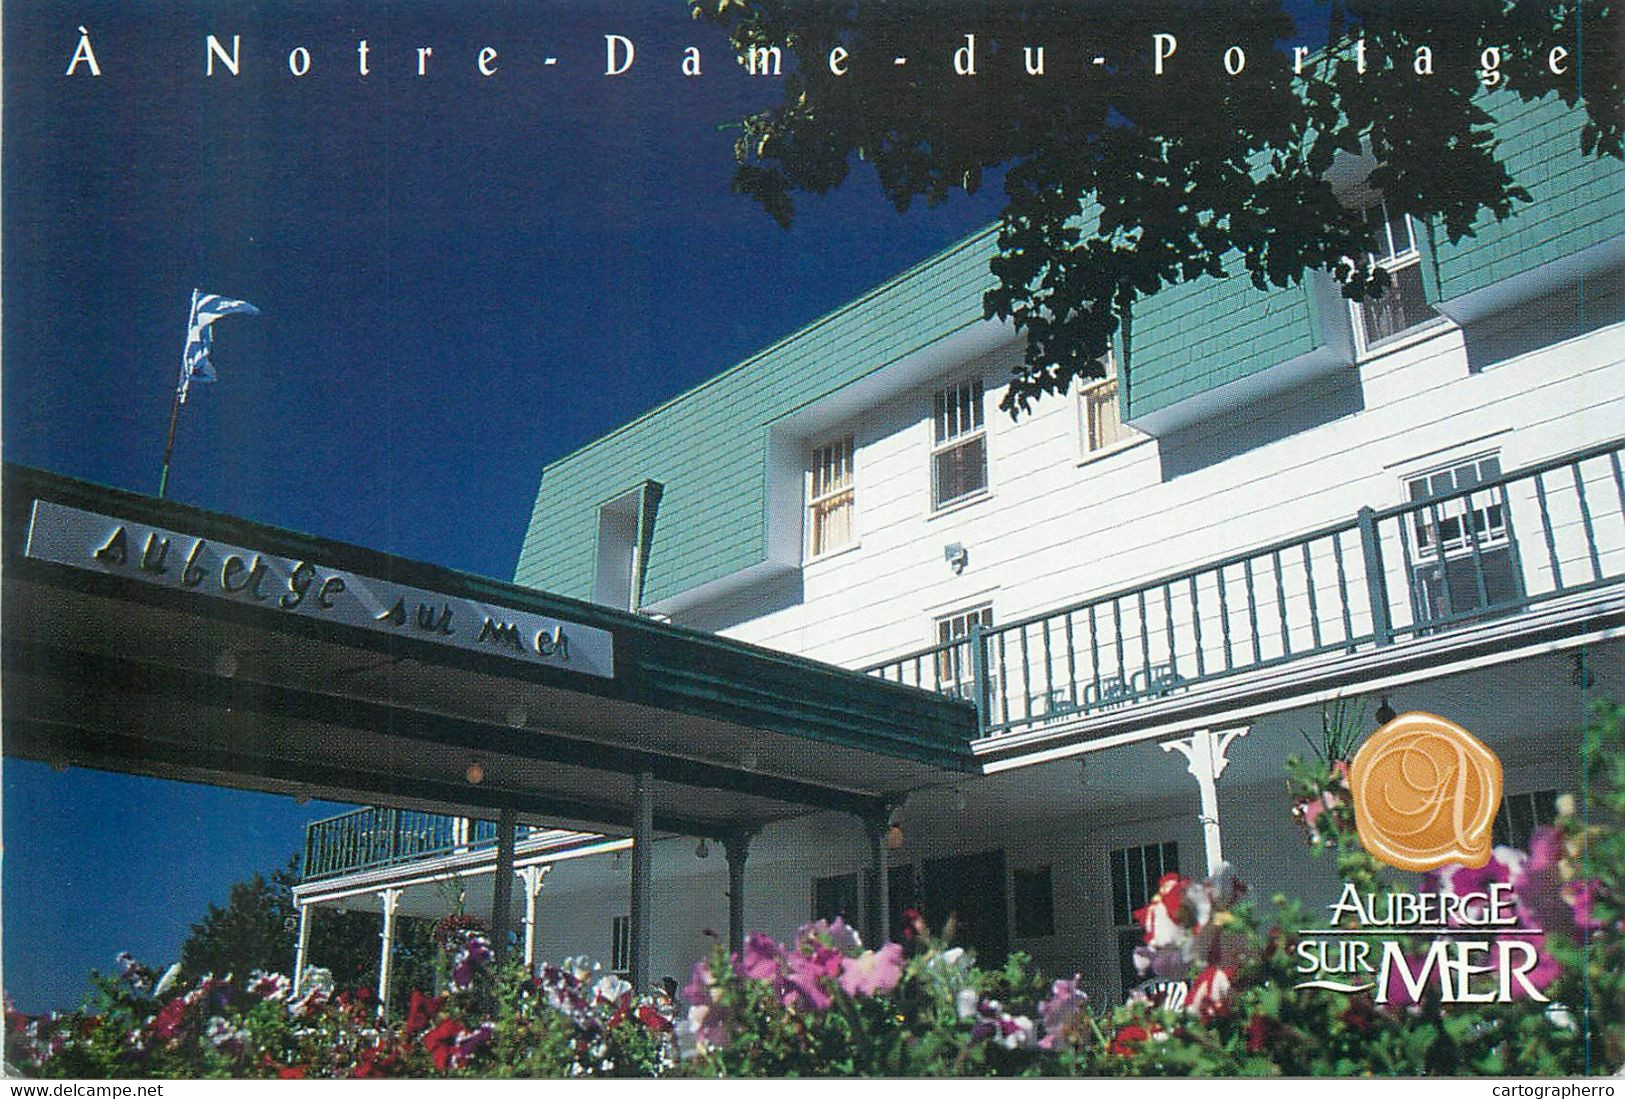 Postcard Canada Quebec Notre-Dame-du-Portage Auberge Sur Mer - Québec - Les Rivières